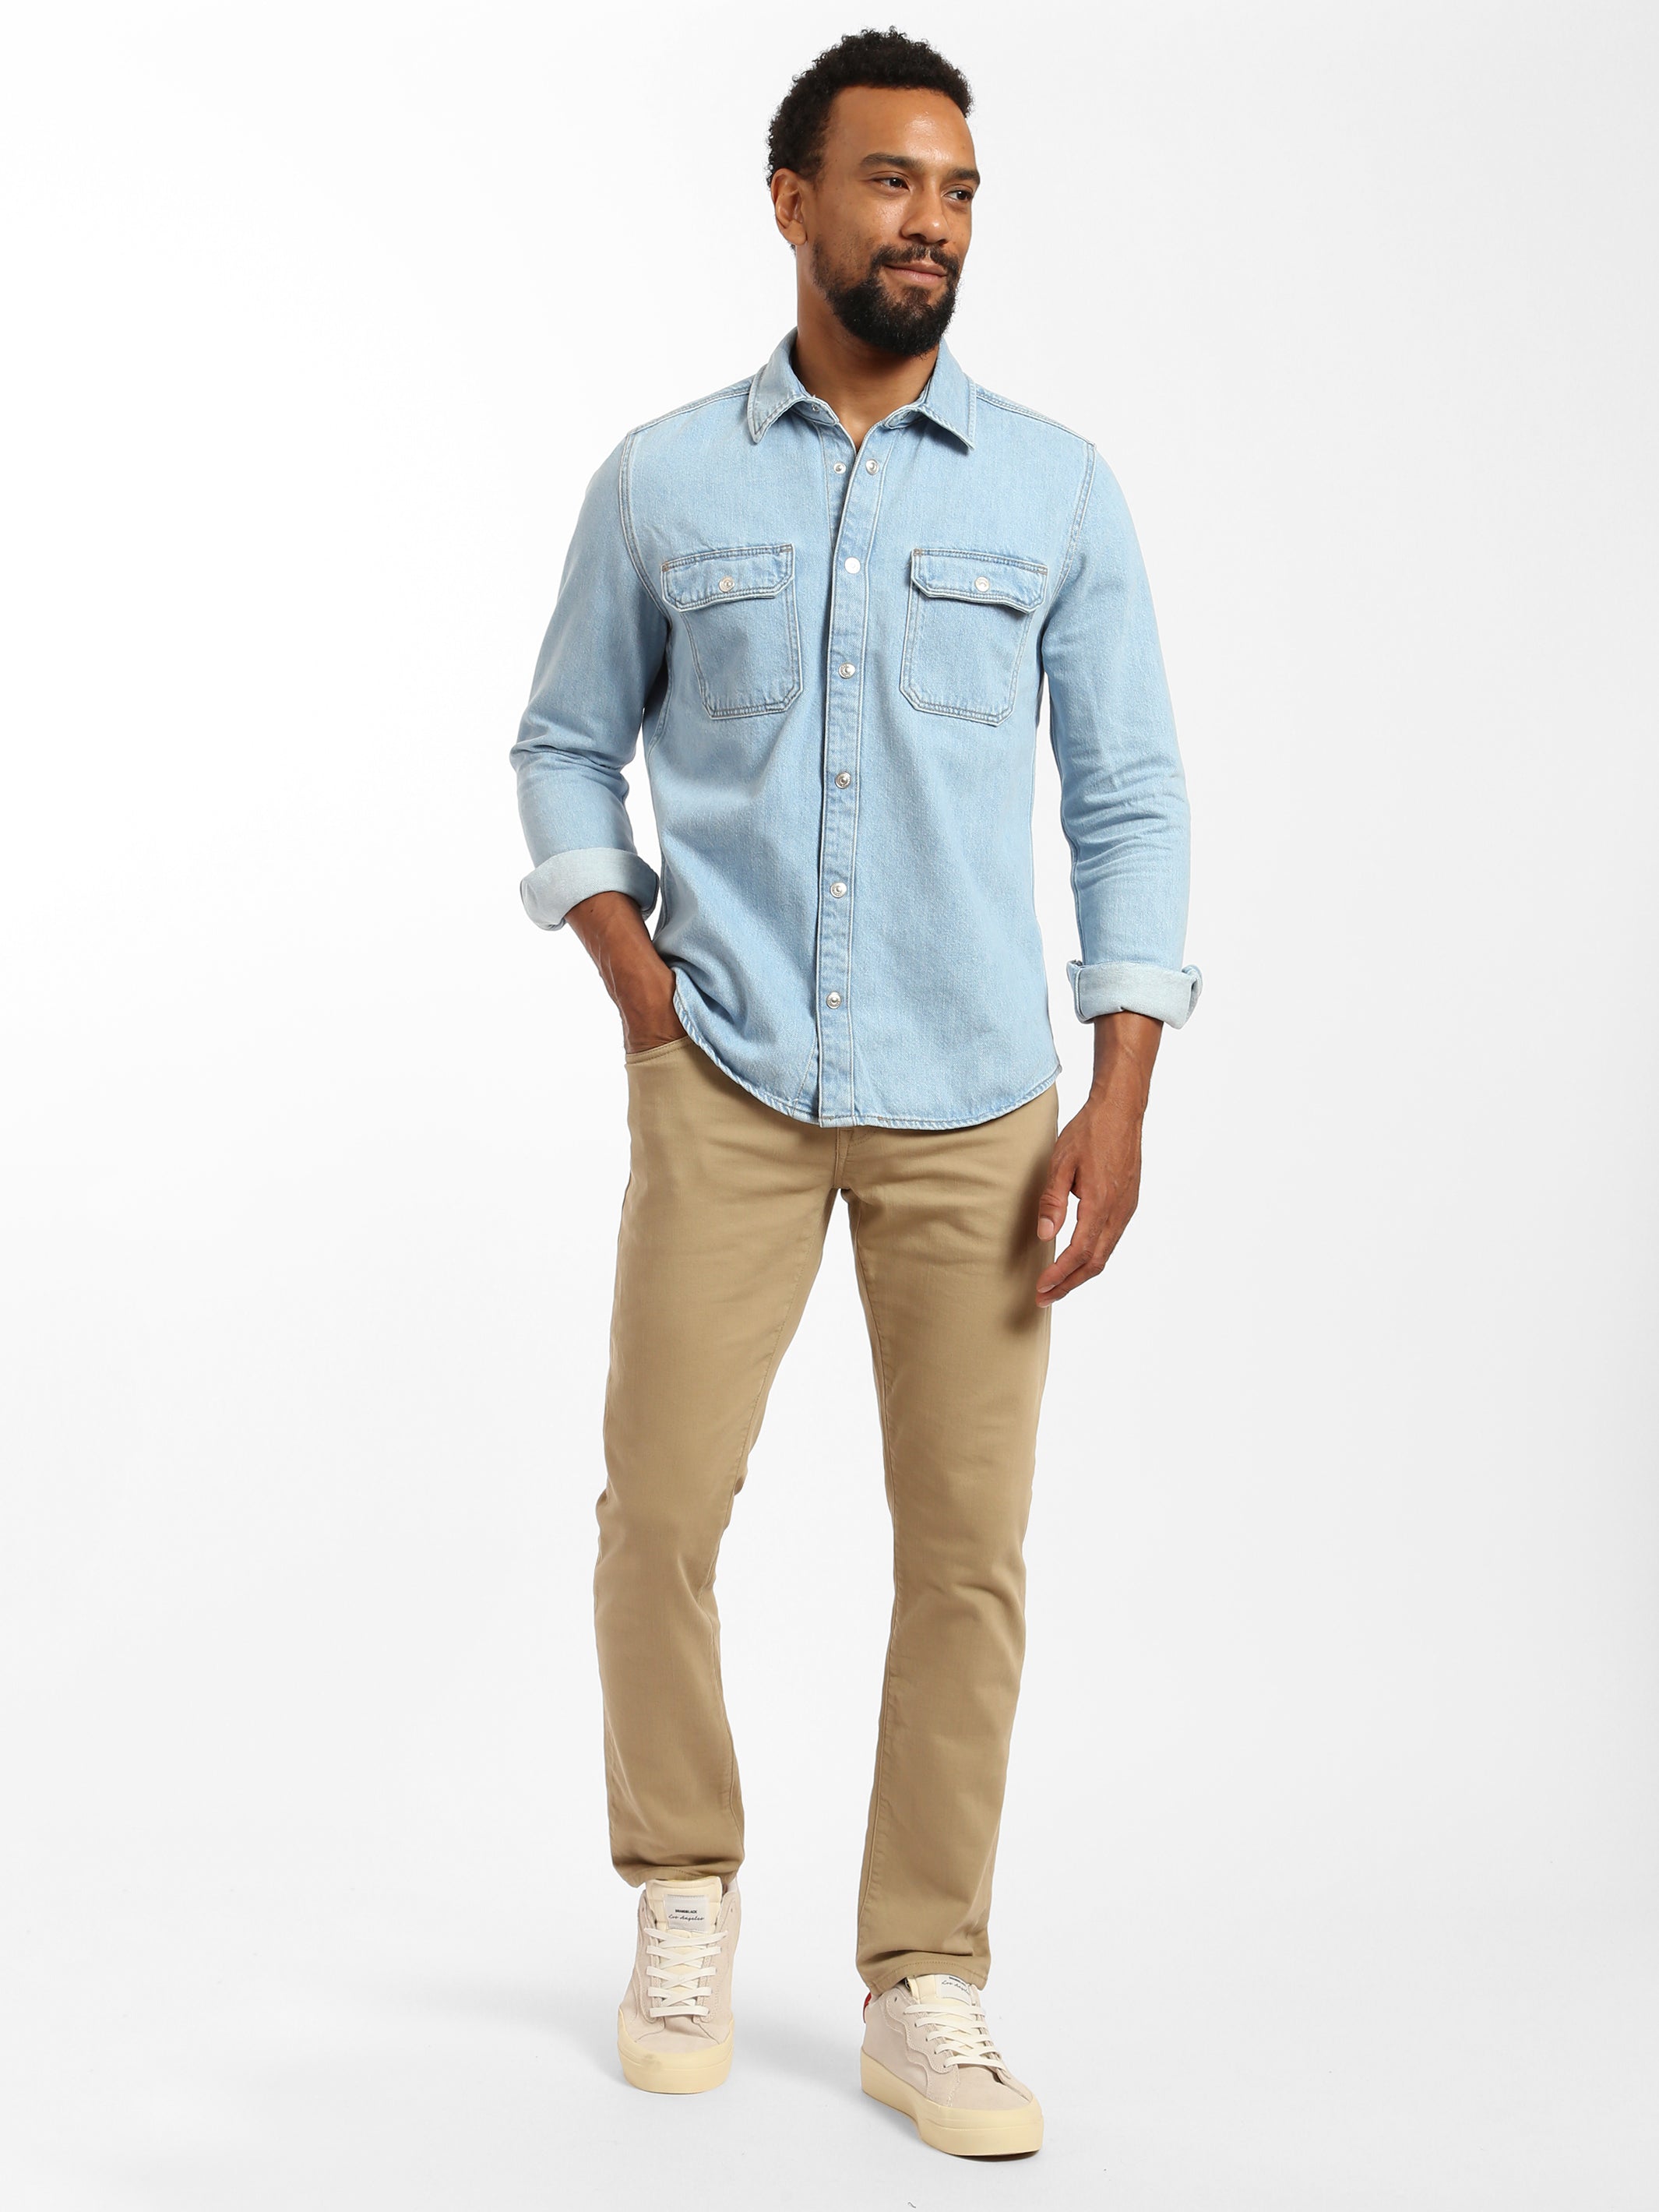 Men's Suit Pants & Separate Pants - Wool Dress Pants & Slim Fit Pants |  SUITSUPPLY US